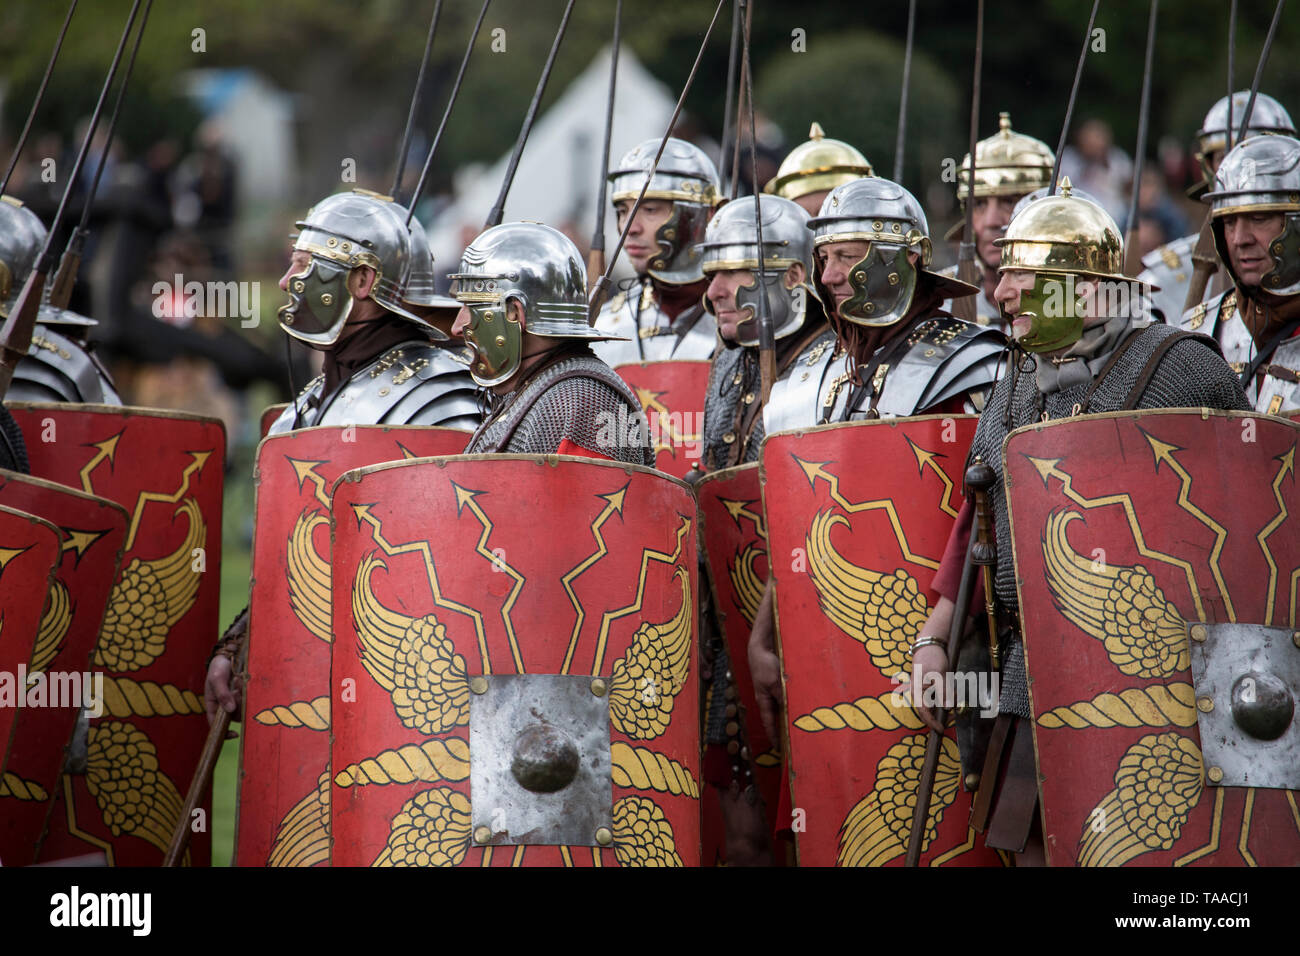 Ermine Street Guard montrent l'armée romaine impériale au Wrest Park, Angleterre Banque D'Images